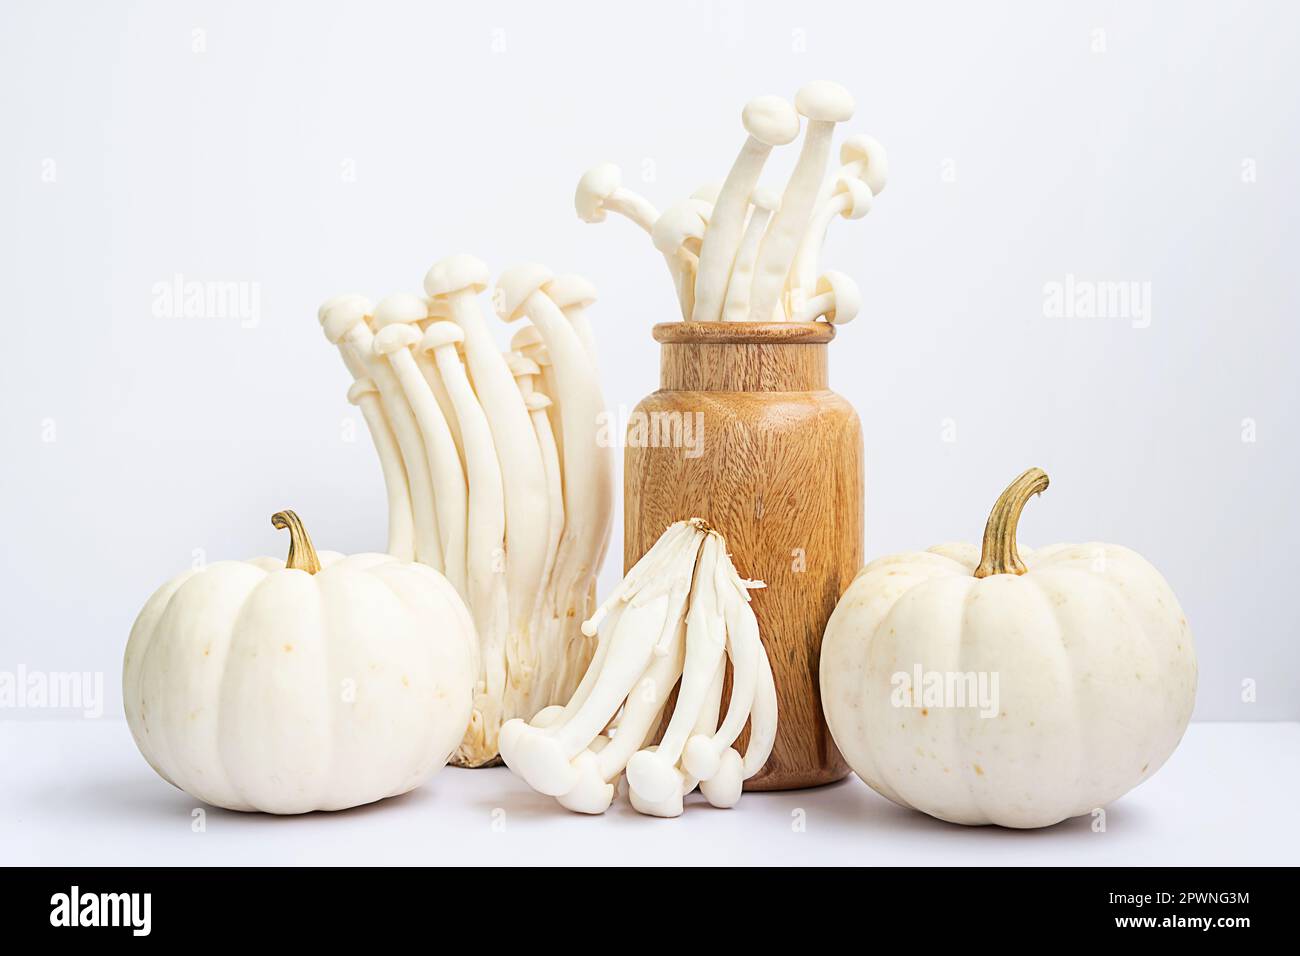 La durée de vie des légumes à l'automne. Petits citrouilles et champignons de hêtre dans un vase en bois. Banque D'Images